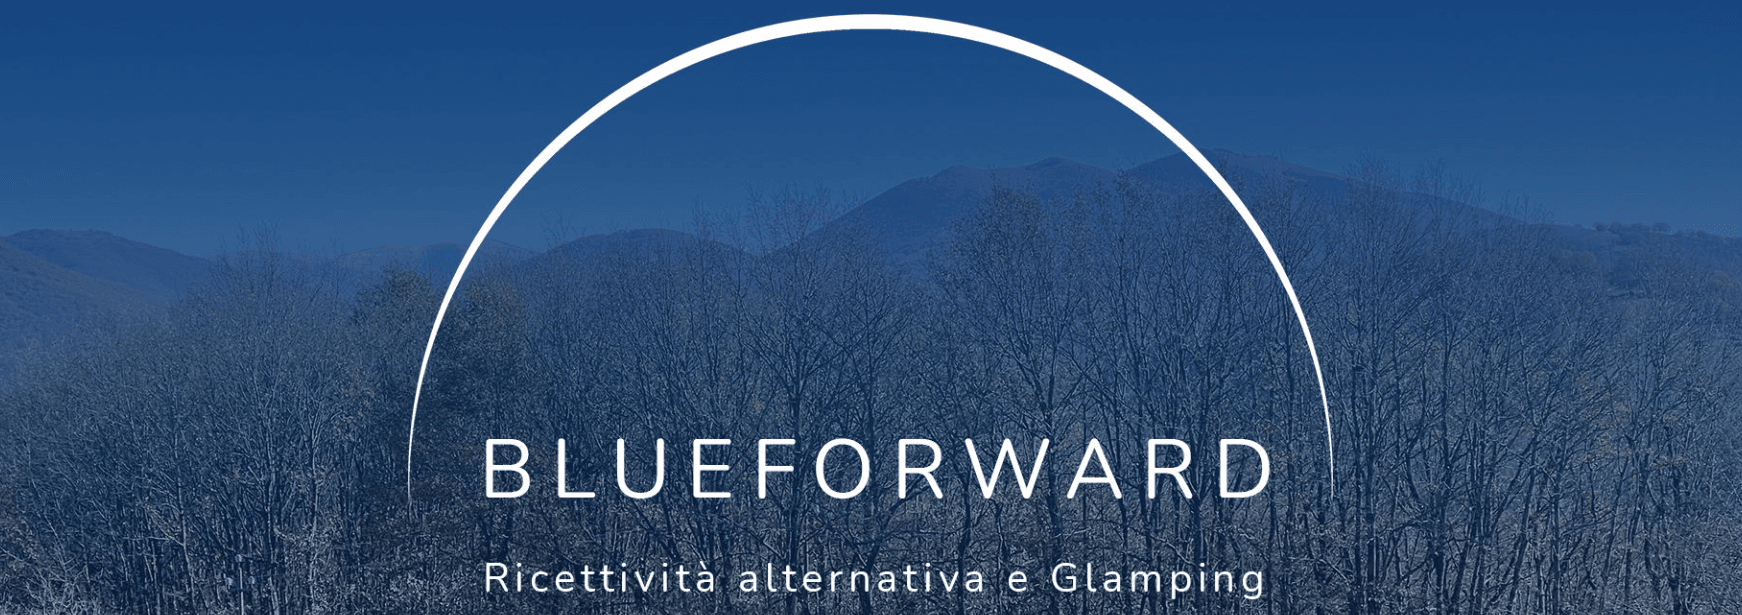 Blueforward